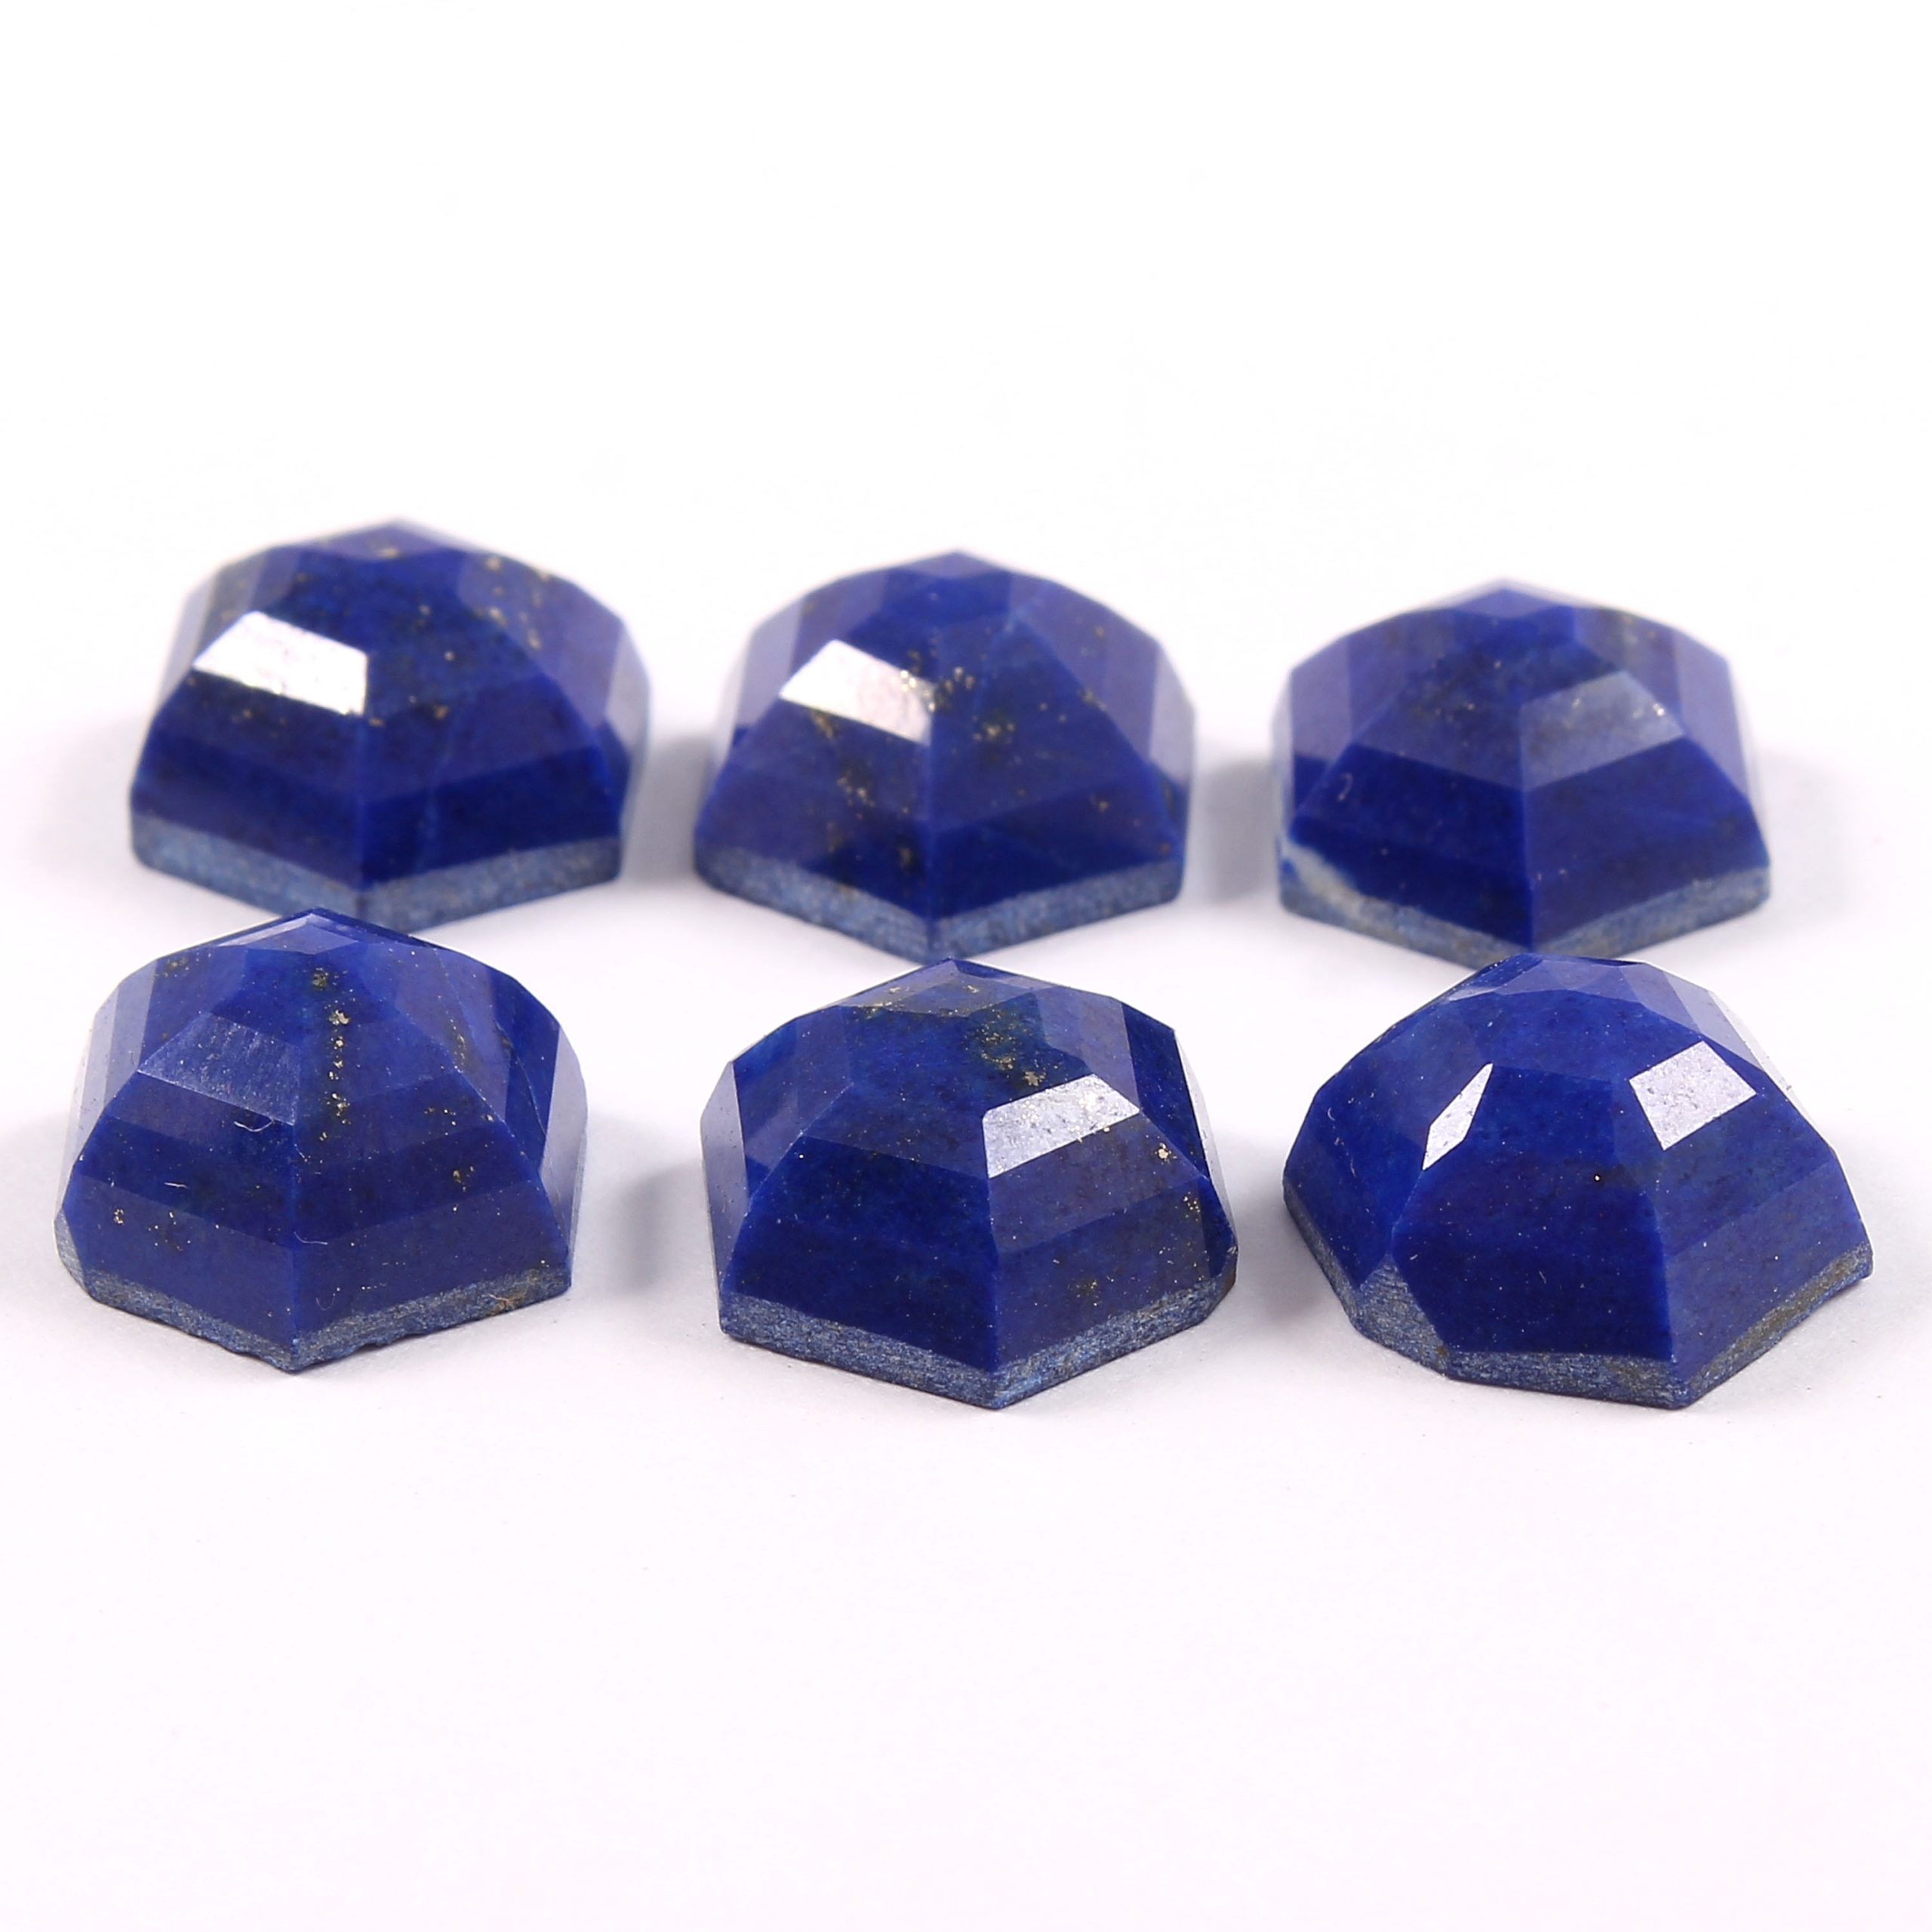 Details about  / Lapis lazuli loose Gemstones briolette faceted cut heart shape size 11mm 15mm